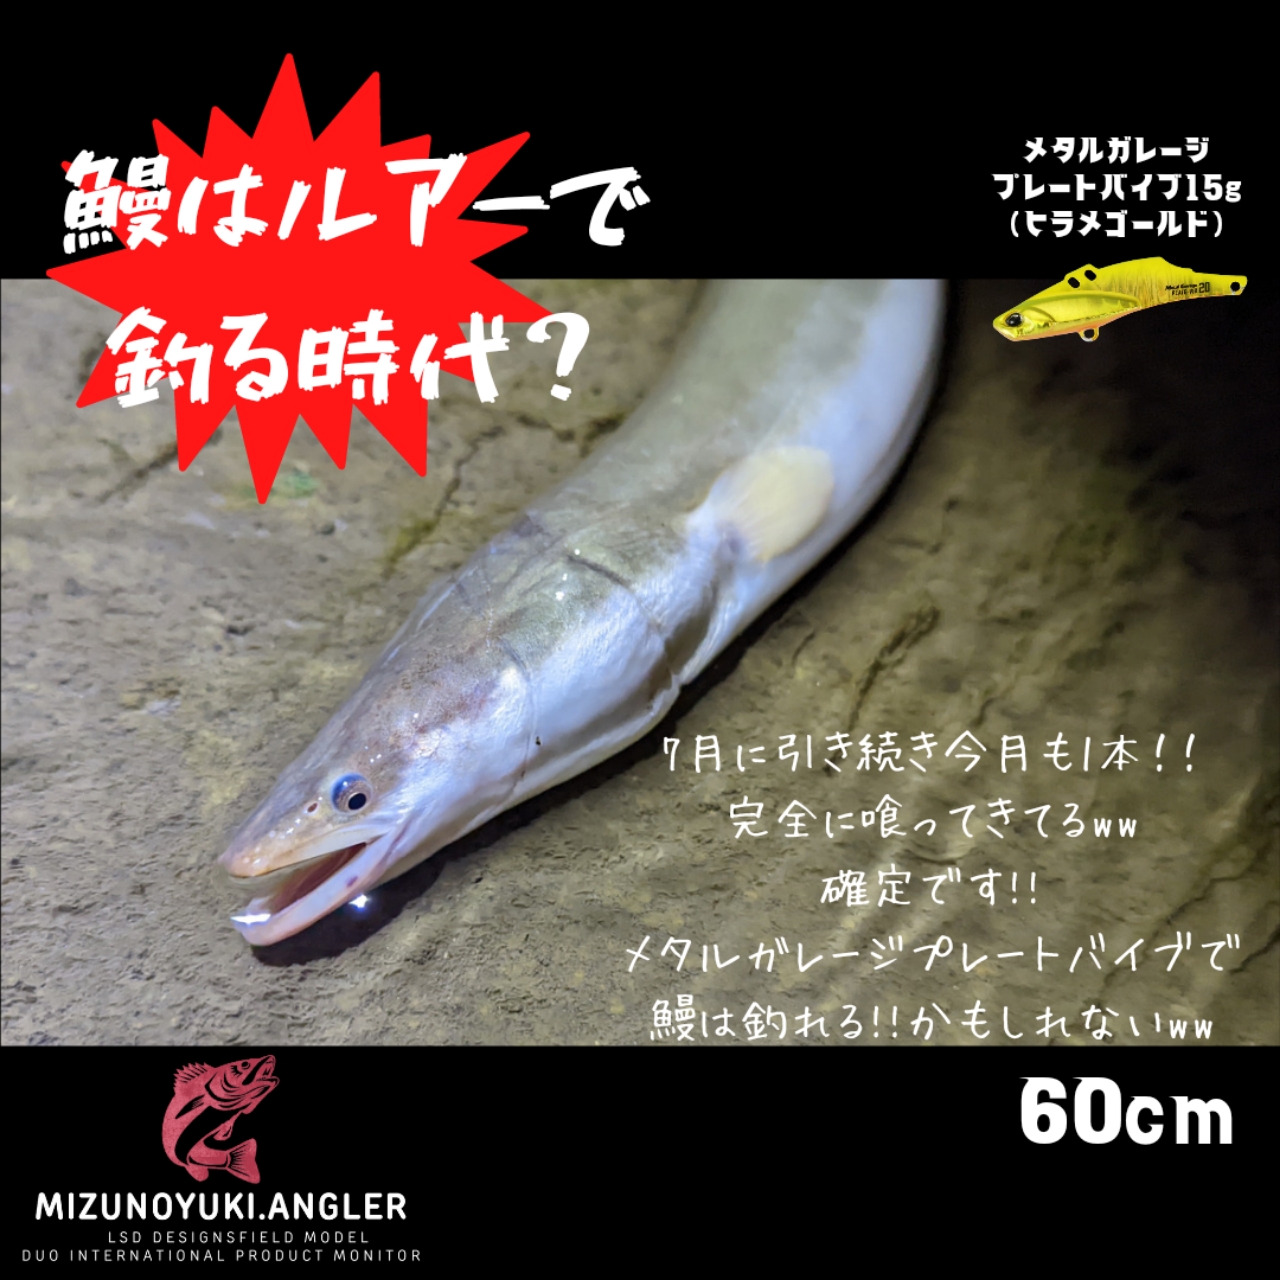 水野ユウキ さんの 2022年08月08日のウナギの釣り・釣果情報(東京都 